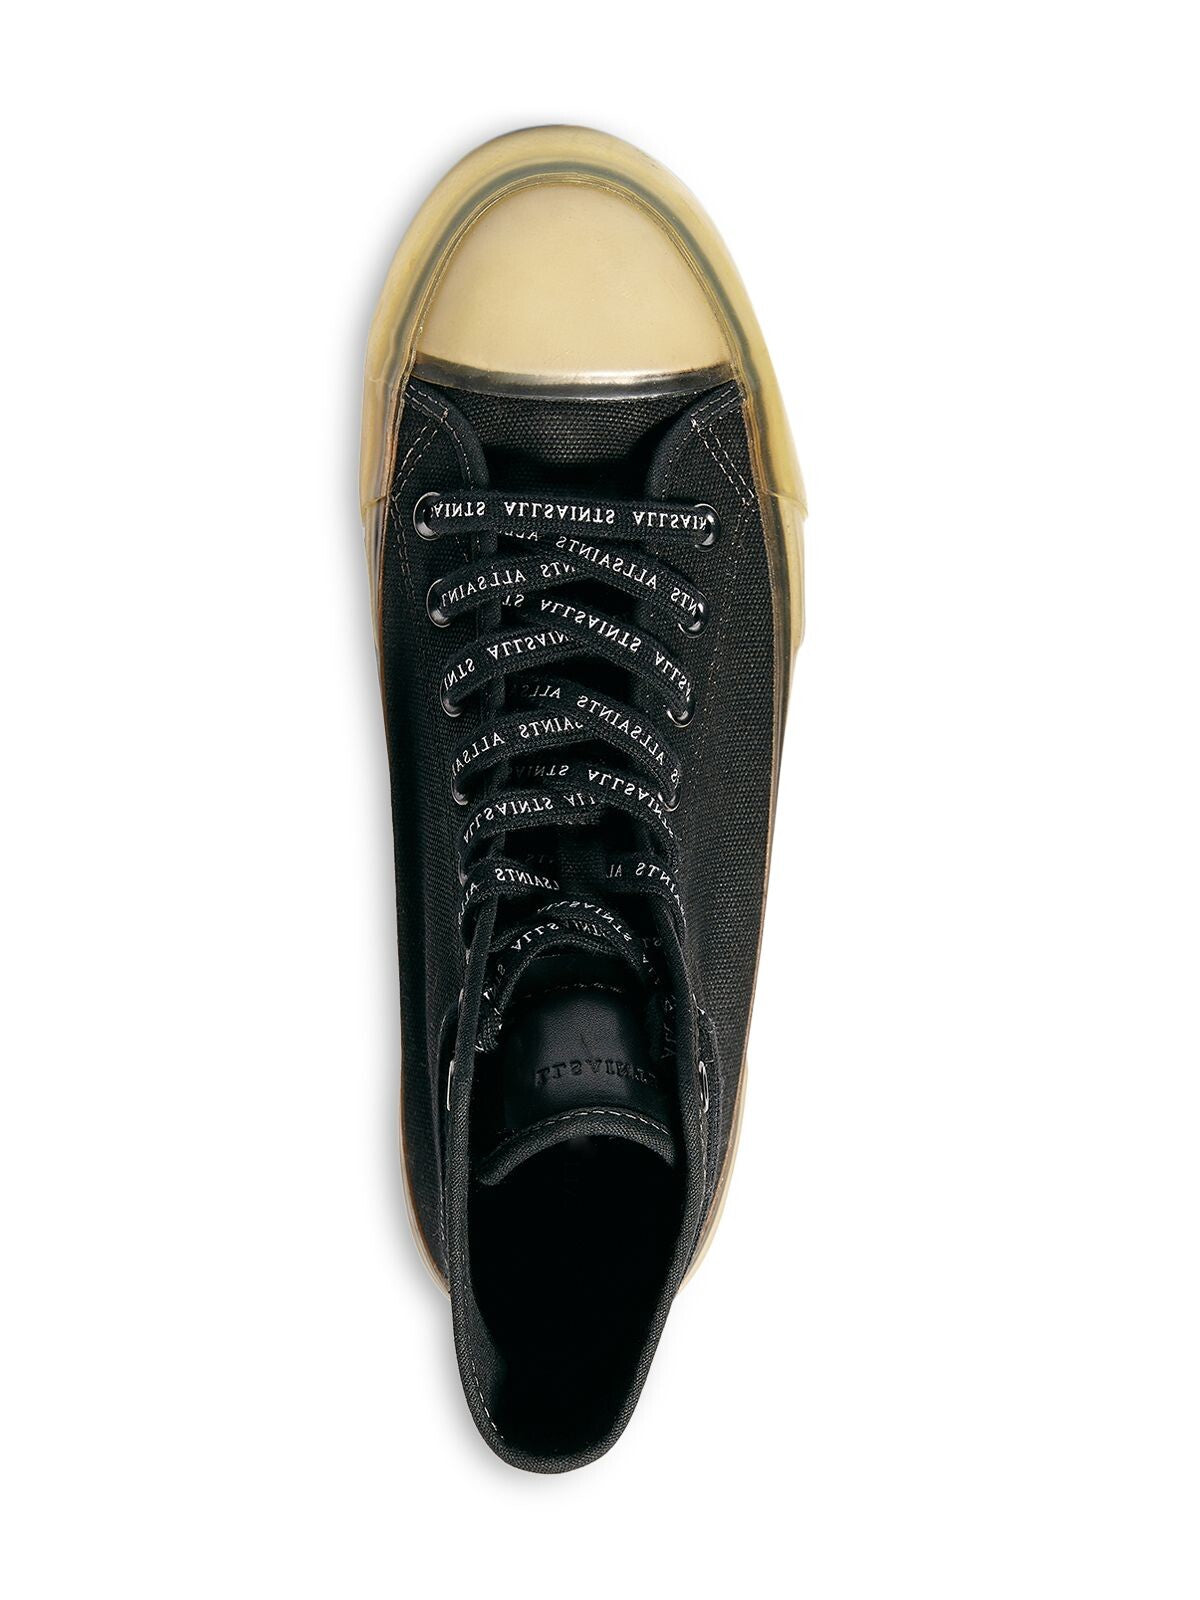 ALLSAINTS Mens Black Jaxon Round Toe Platform Lace-Up Athletic Sneakers Shoes 8